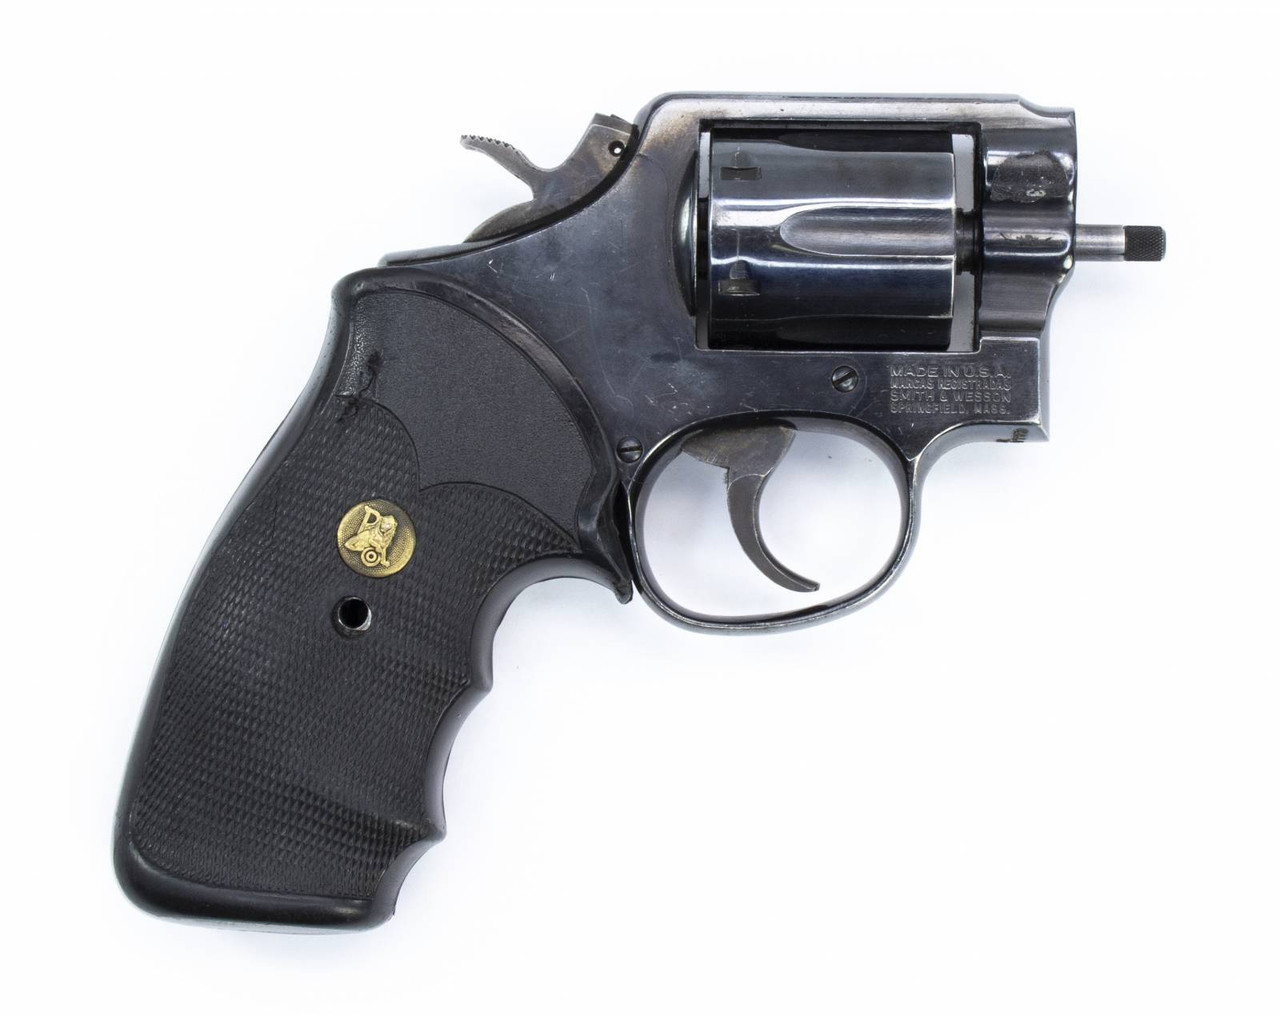 S&W 10-7 Revolver, .38 Special, No Barrel, Blued9204 - Centerfire Systems